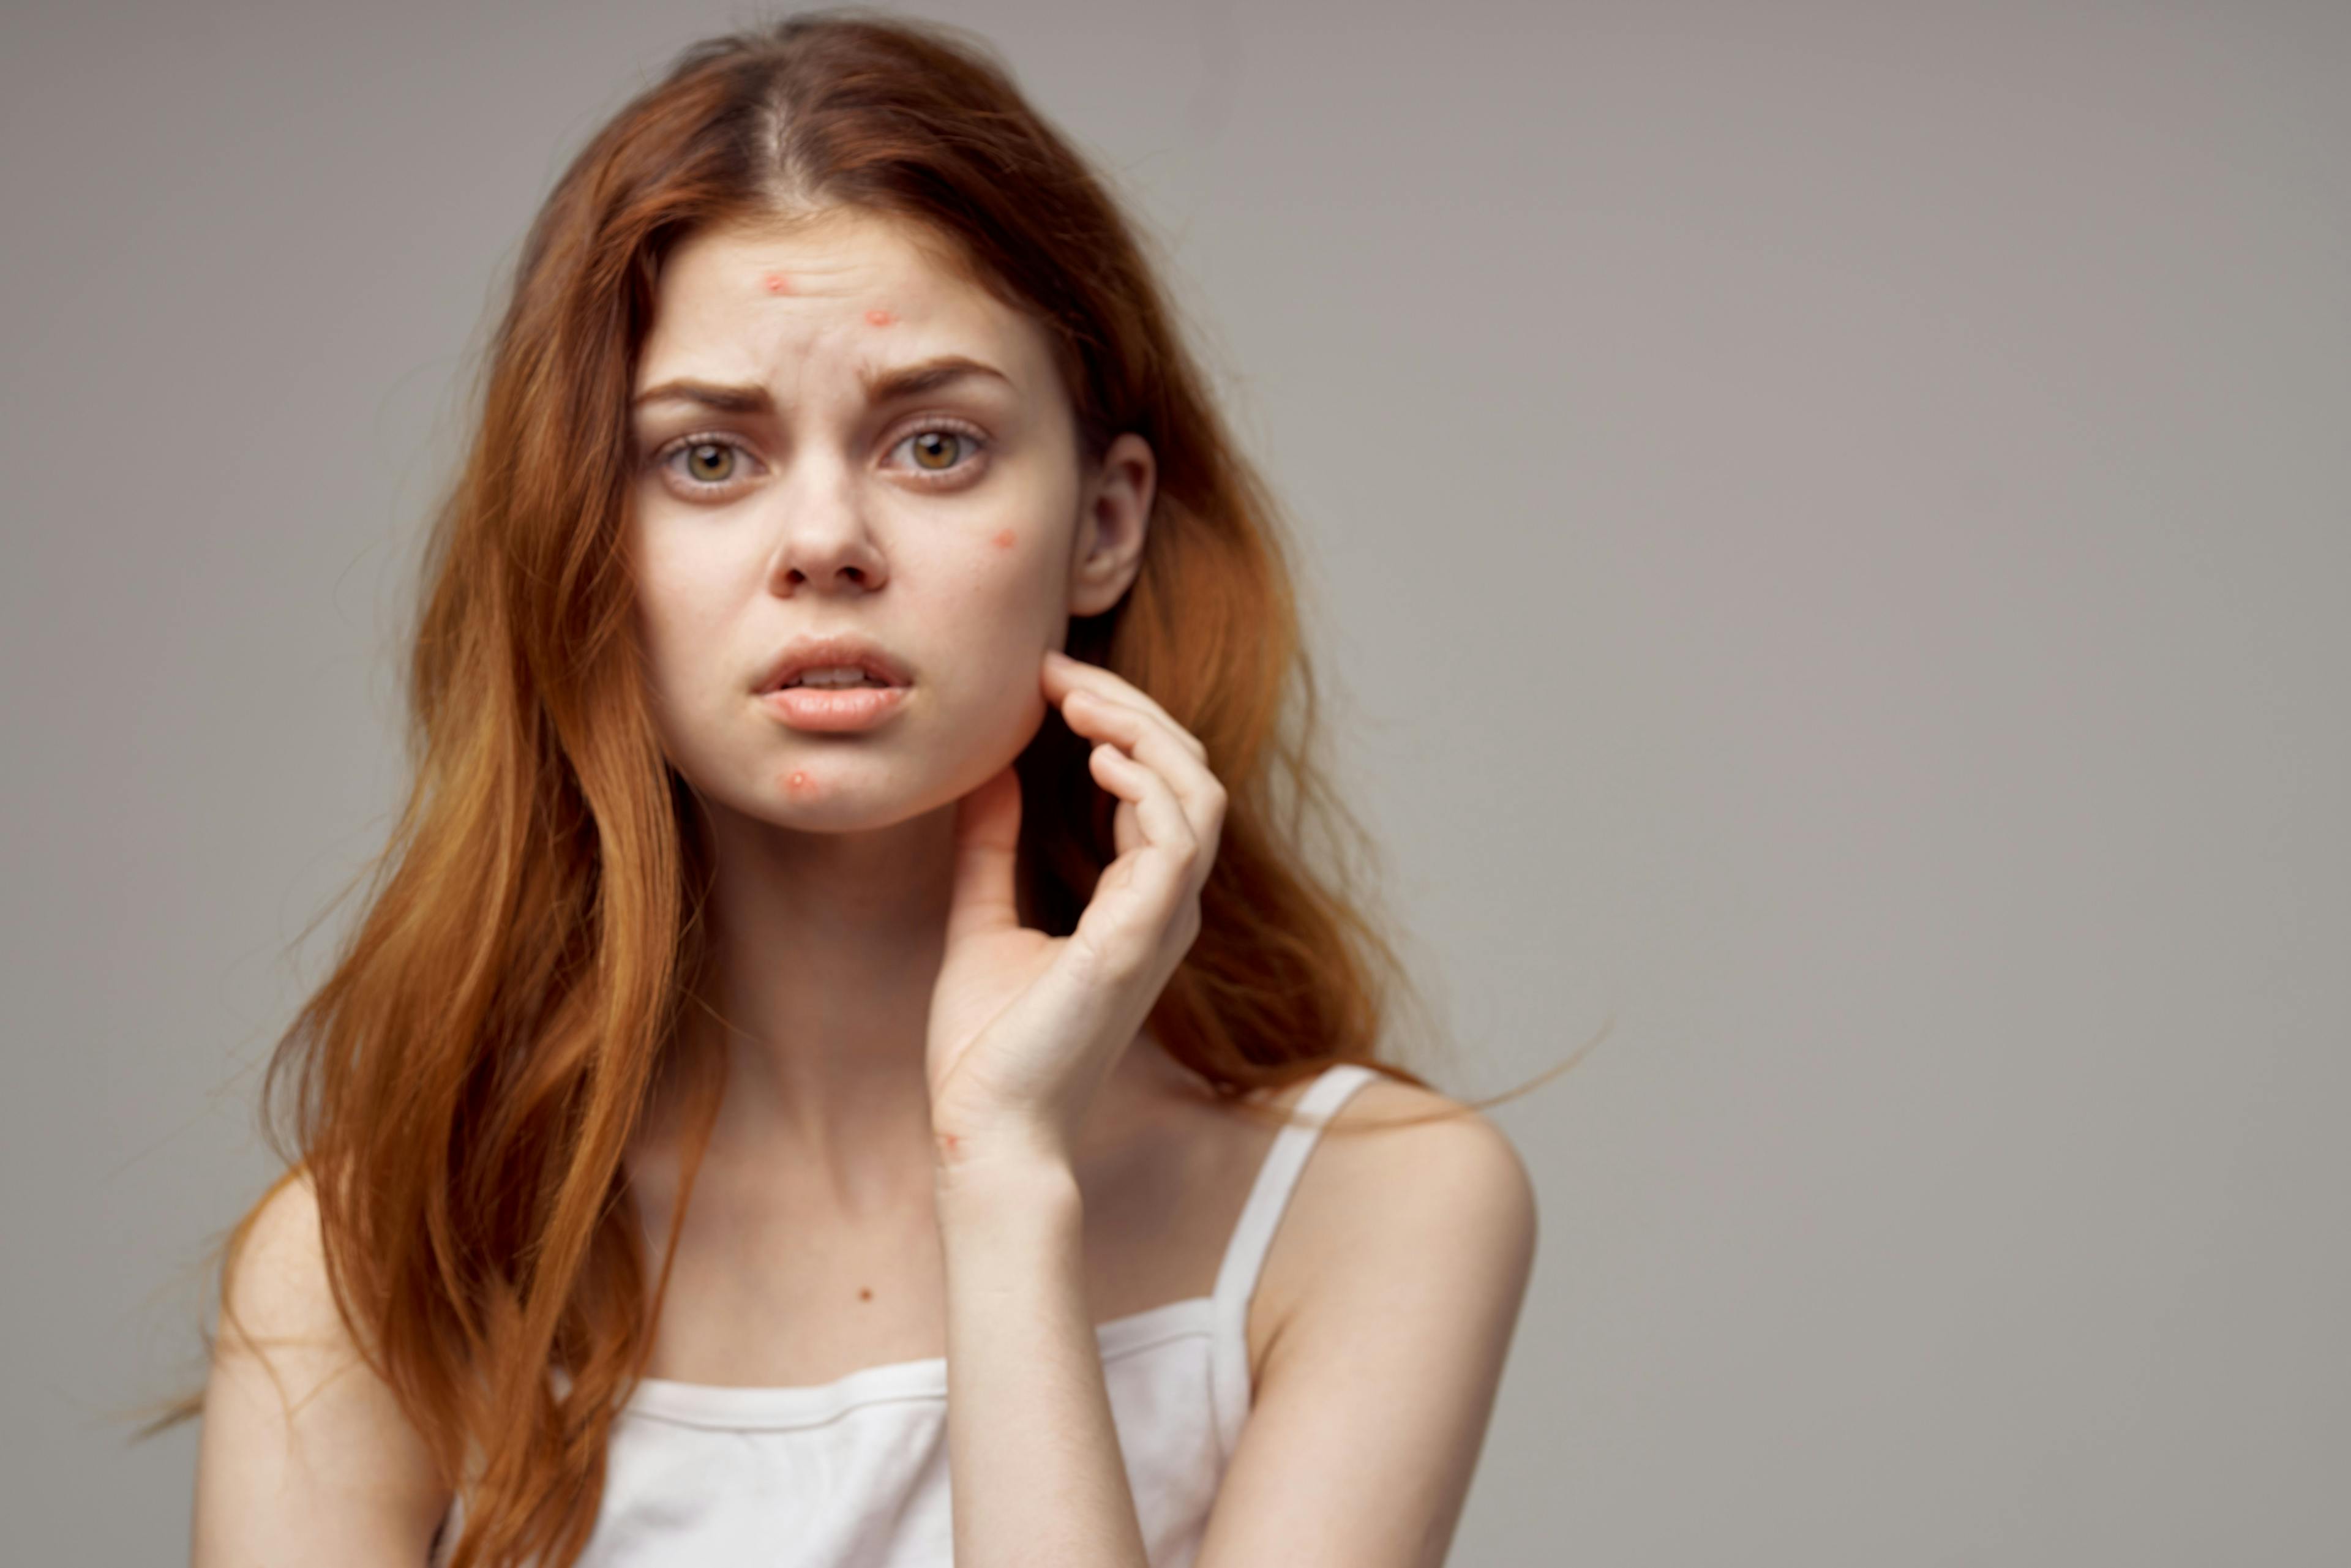 Acne vulgaris in teenagers